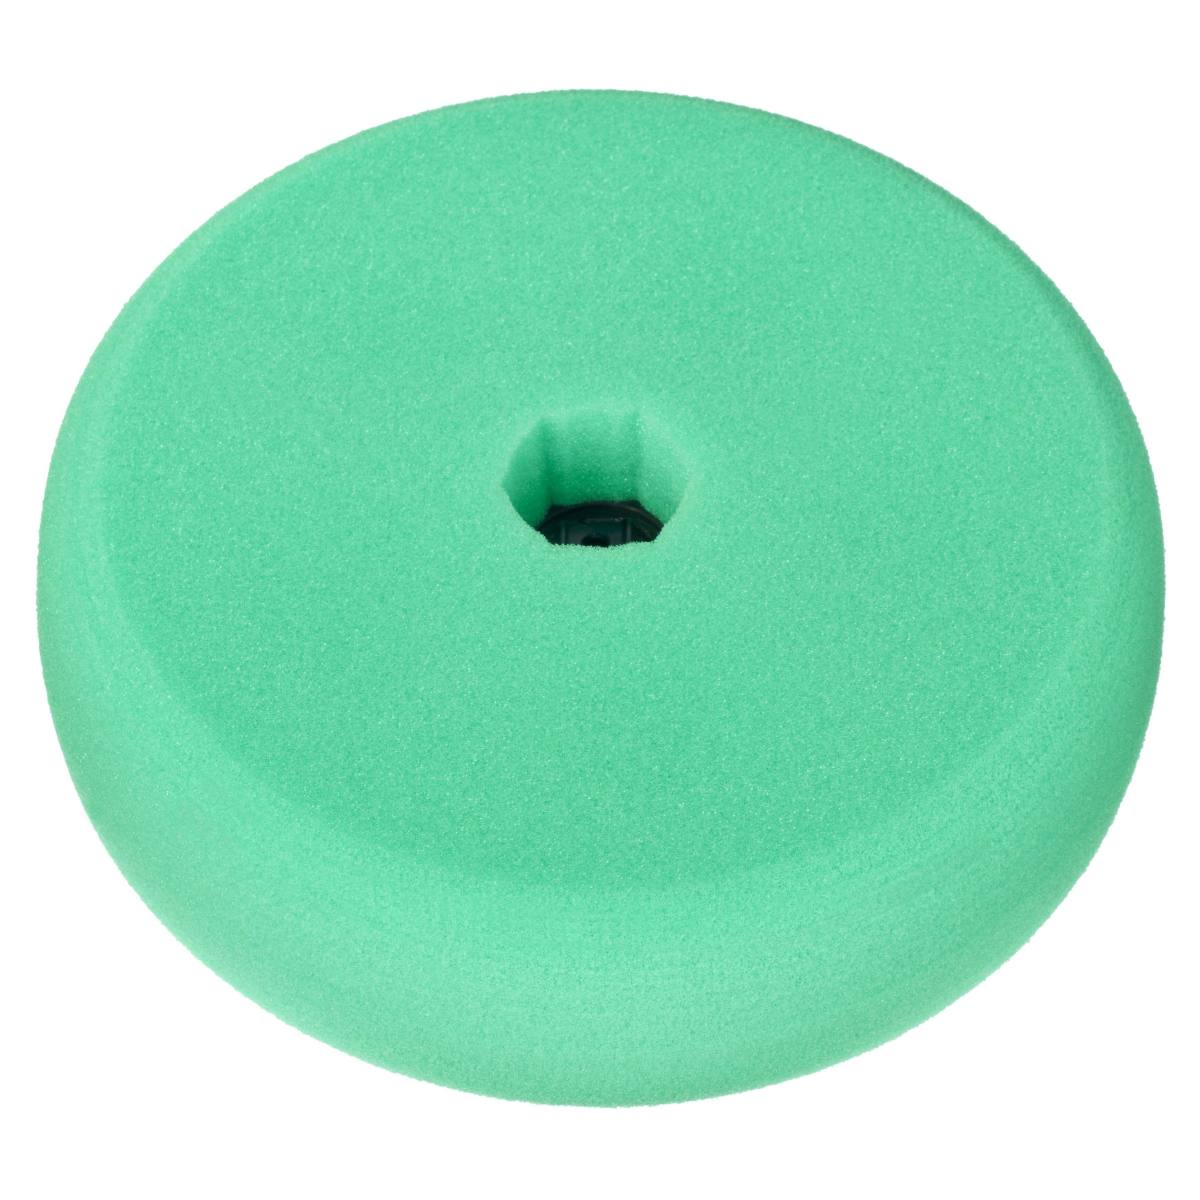 schiuma lucida 3M Quick Connect Perfect-it III, biadesiva liscia, verde, 150 mm